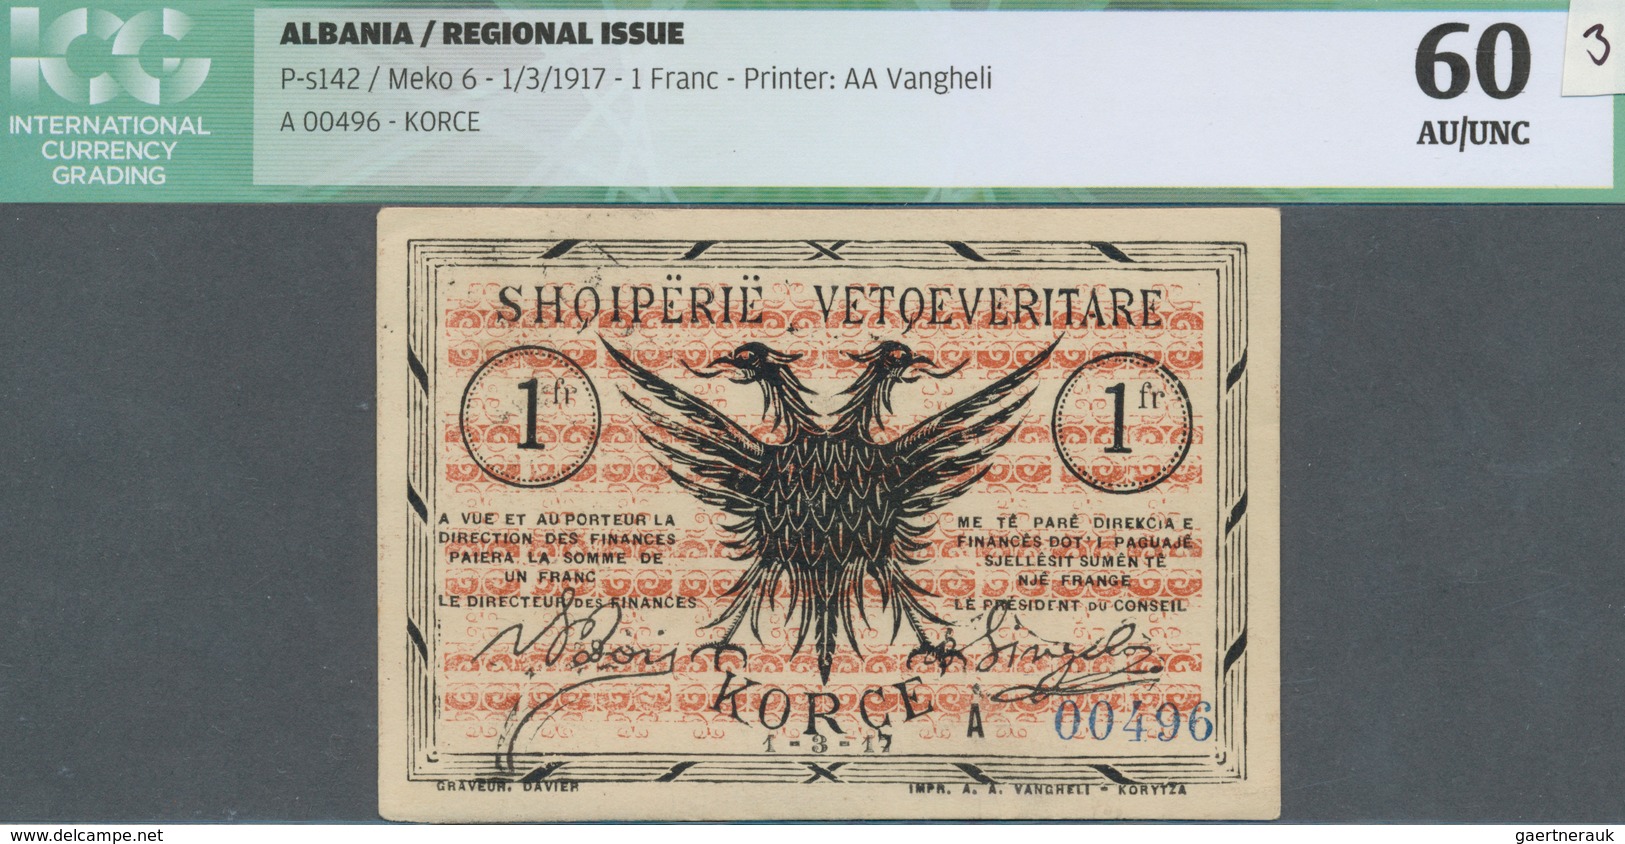 Albania / Albanien: 1 Franc 1917 P. S142, Printer AA Vangheli, S/N #A00496, Unfolded, Light Handling - Albanie